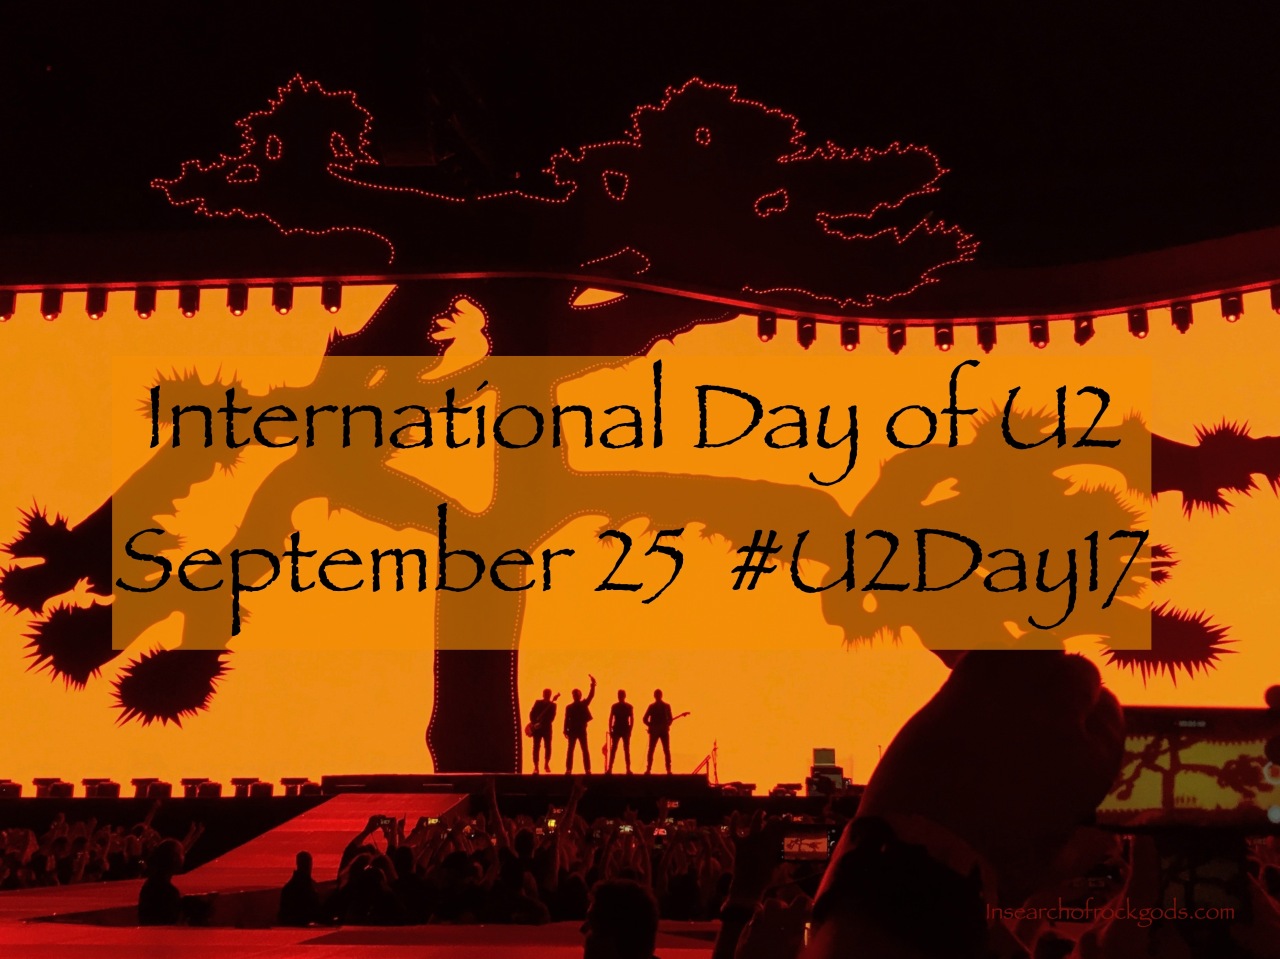 I DO U2: Proposing September 25 as International Day Of U2